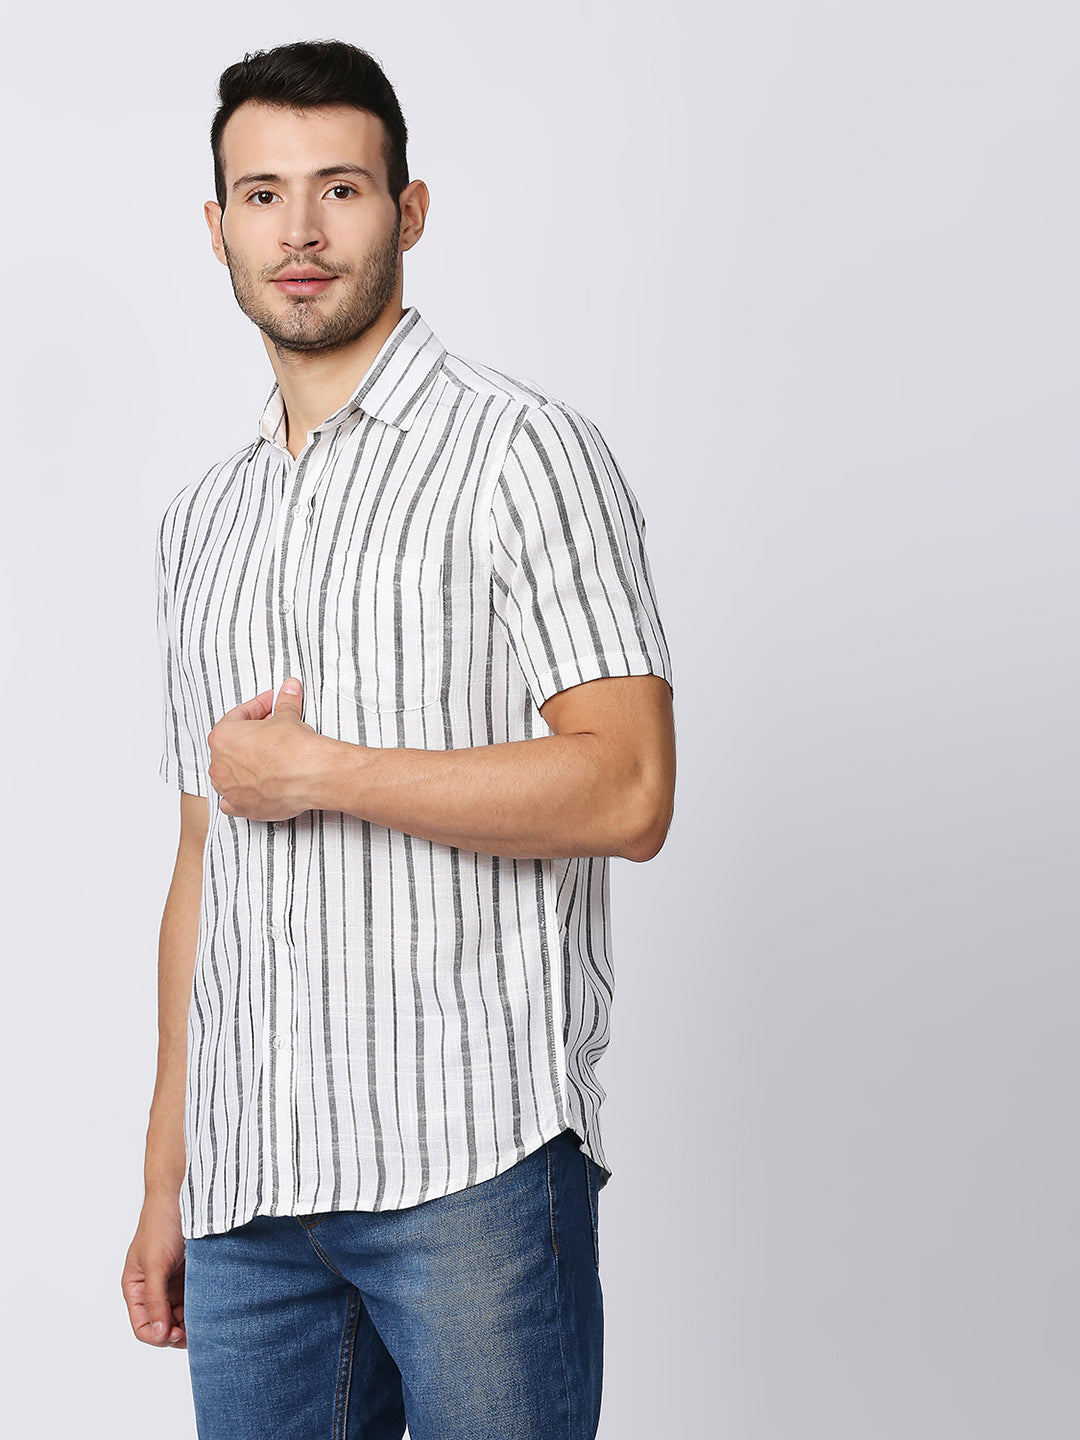 Dazzle White Large Stripes Shirt